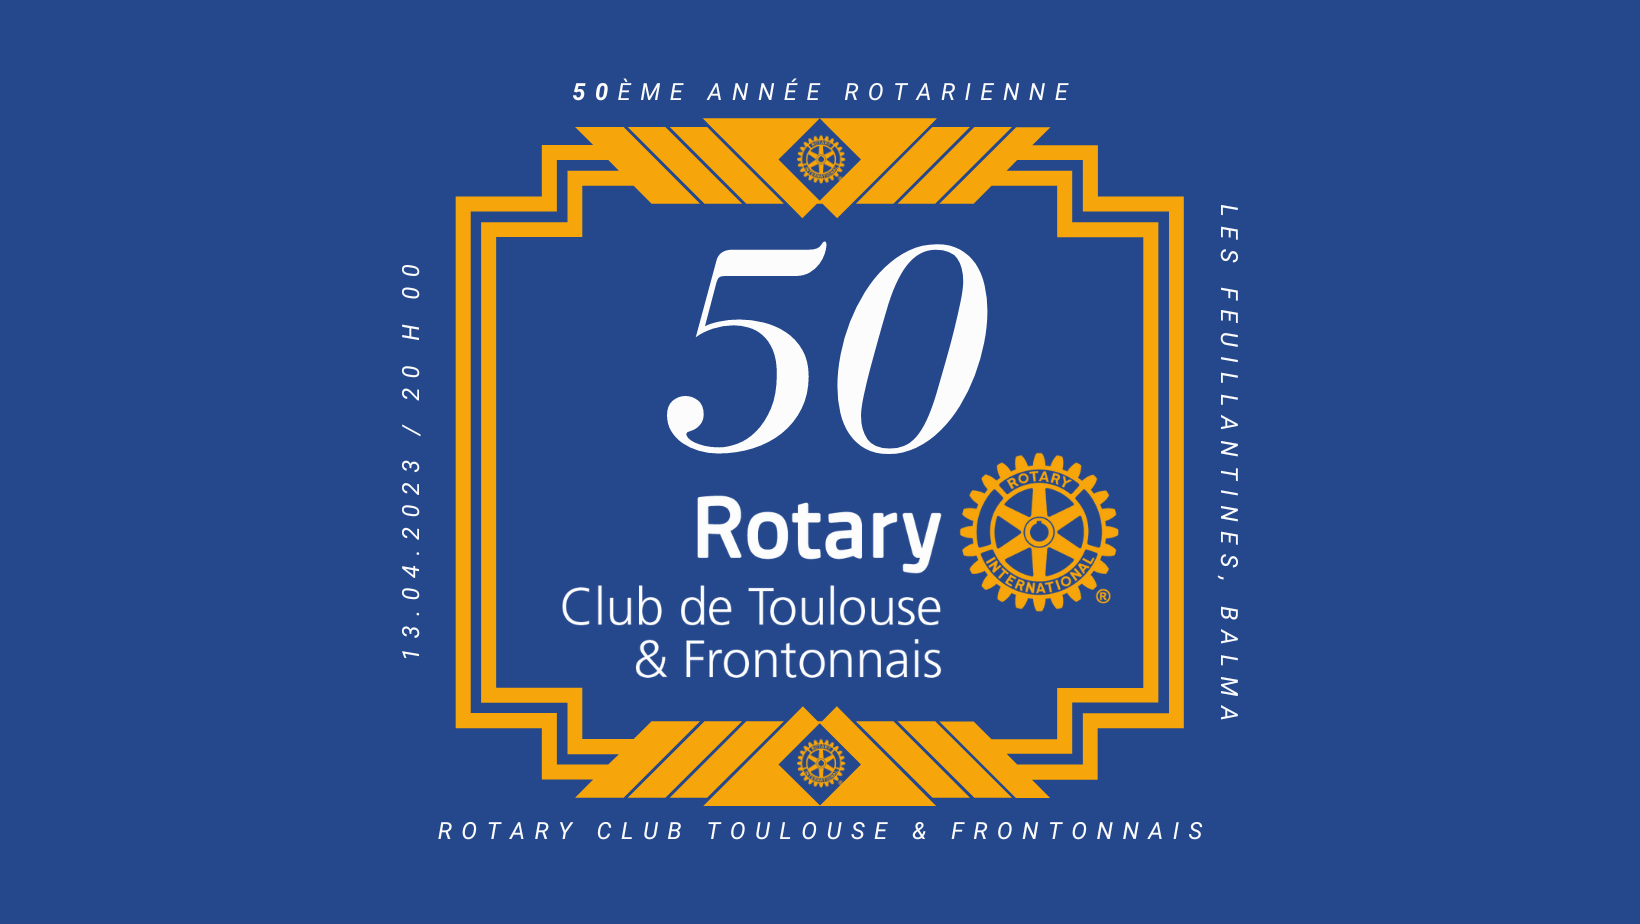 rotary club toulouse et frontonnais anniversaire 50eme année rotarienne visite du grouverneur